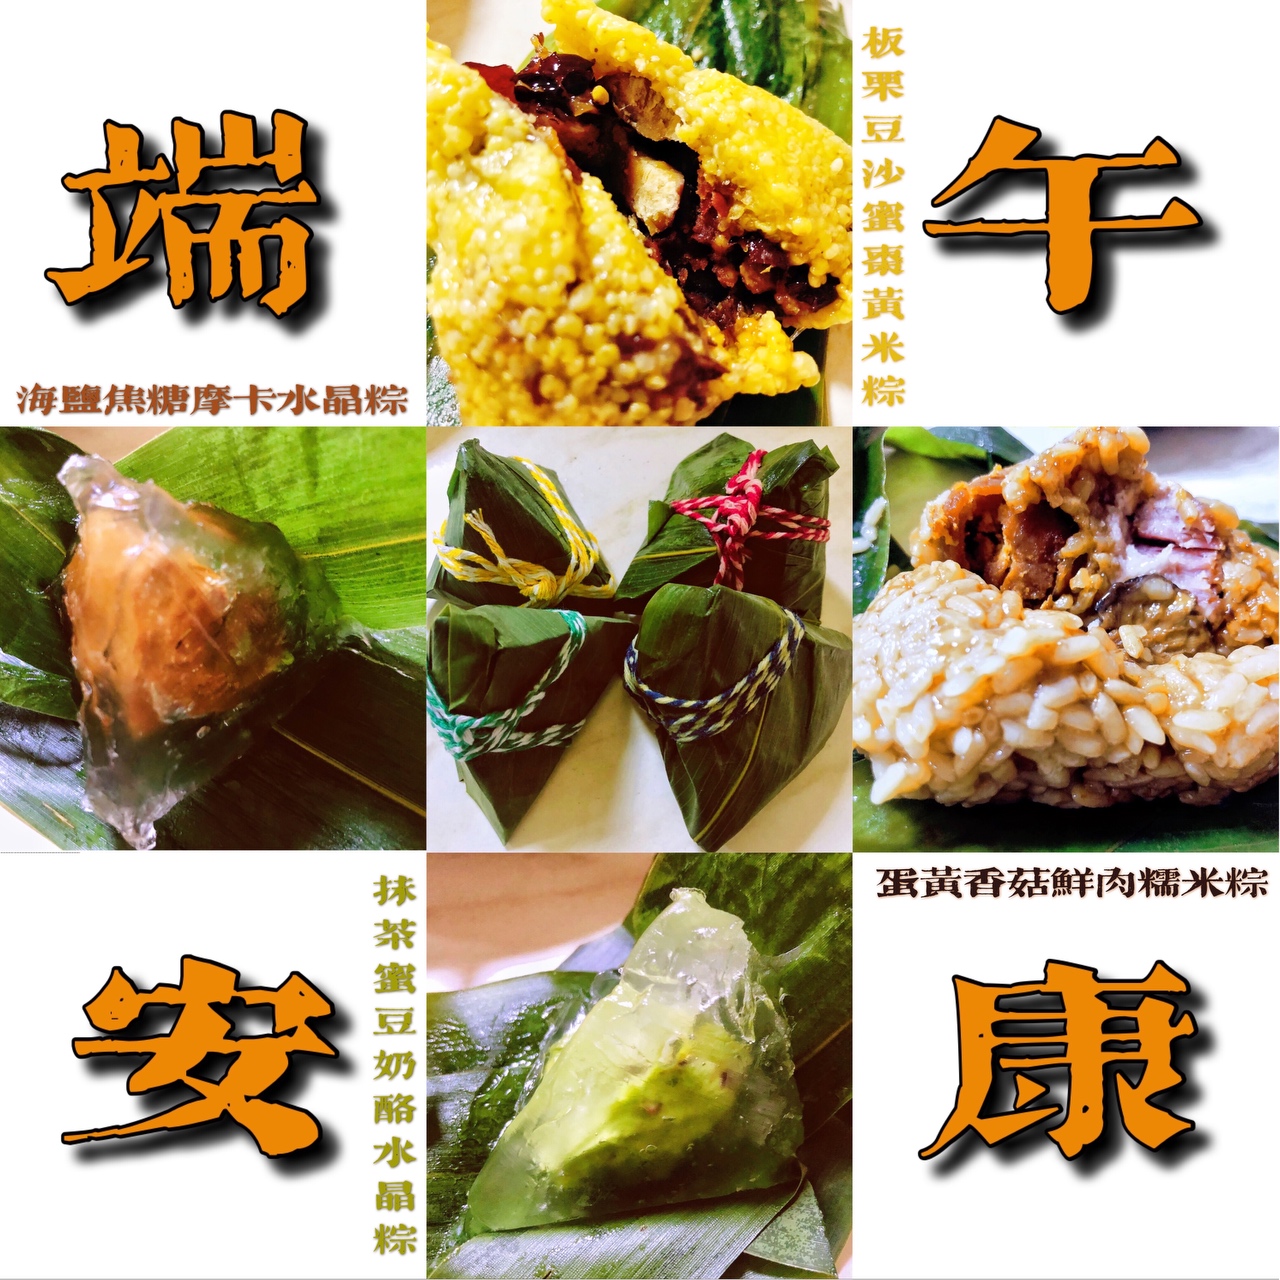 端午节的4款粽子（米粽、冰粽）（板栗豆沙蜜枣、蛋黄香菇鲜肉、抹茶蜜豆奶酪、焦糖海盐摩卡）